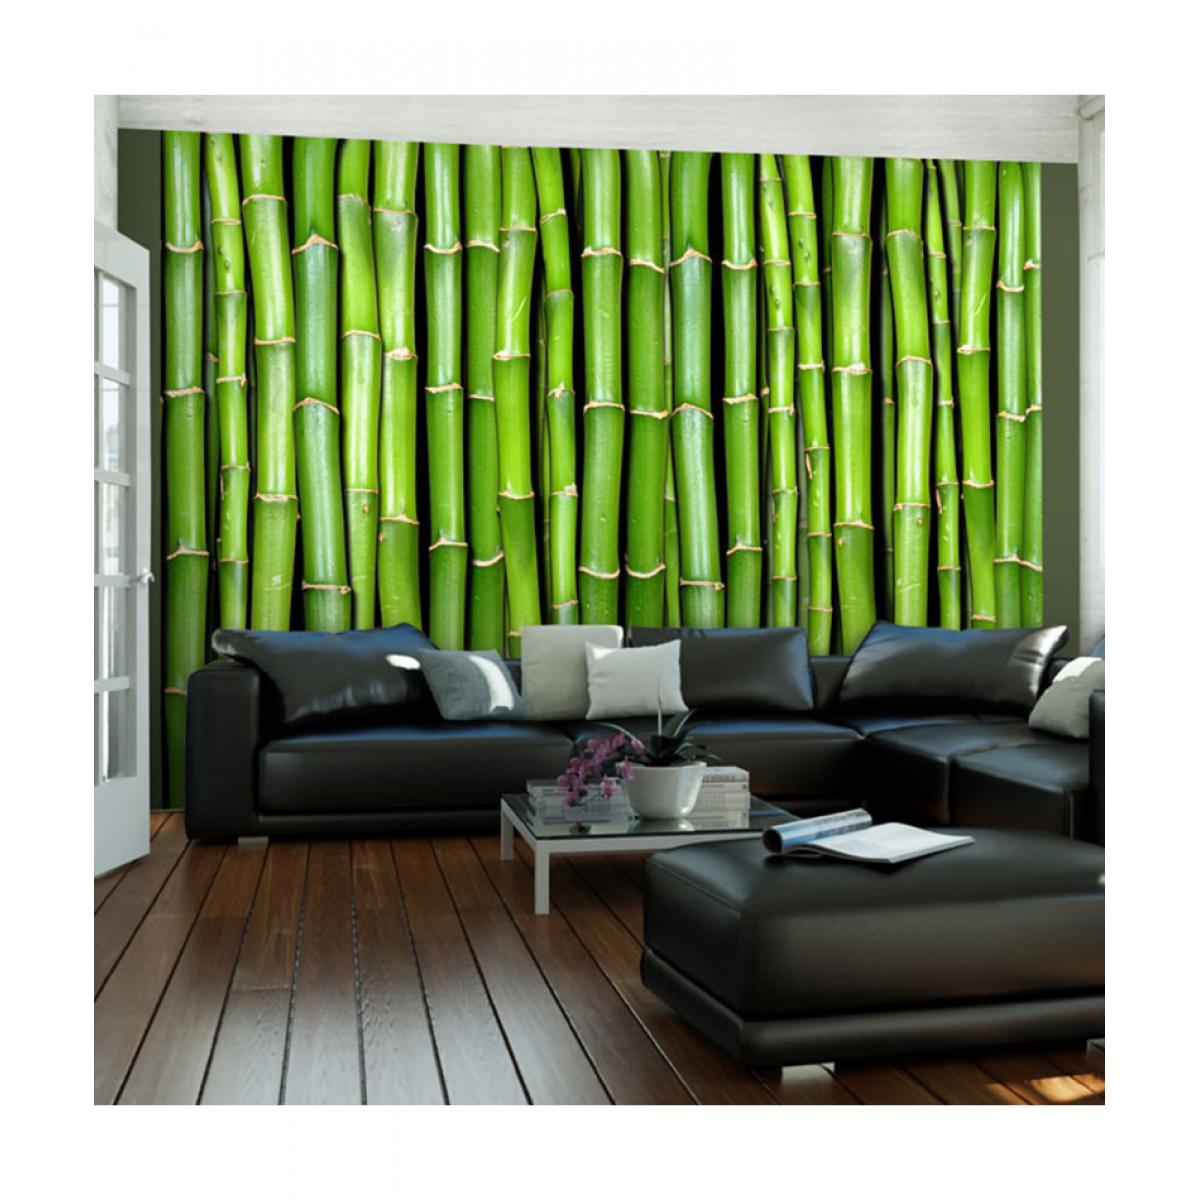 Artgeist - Papier peint - Mur vert bambou 350x270 - Papier peint